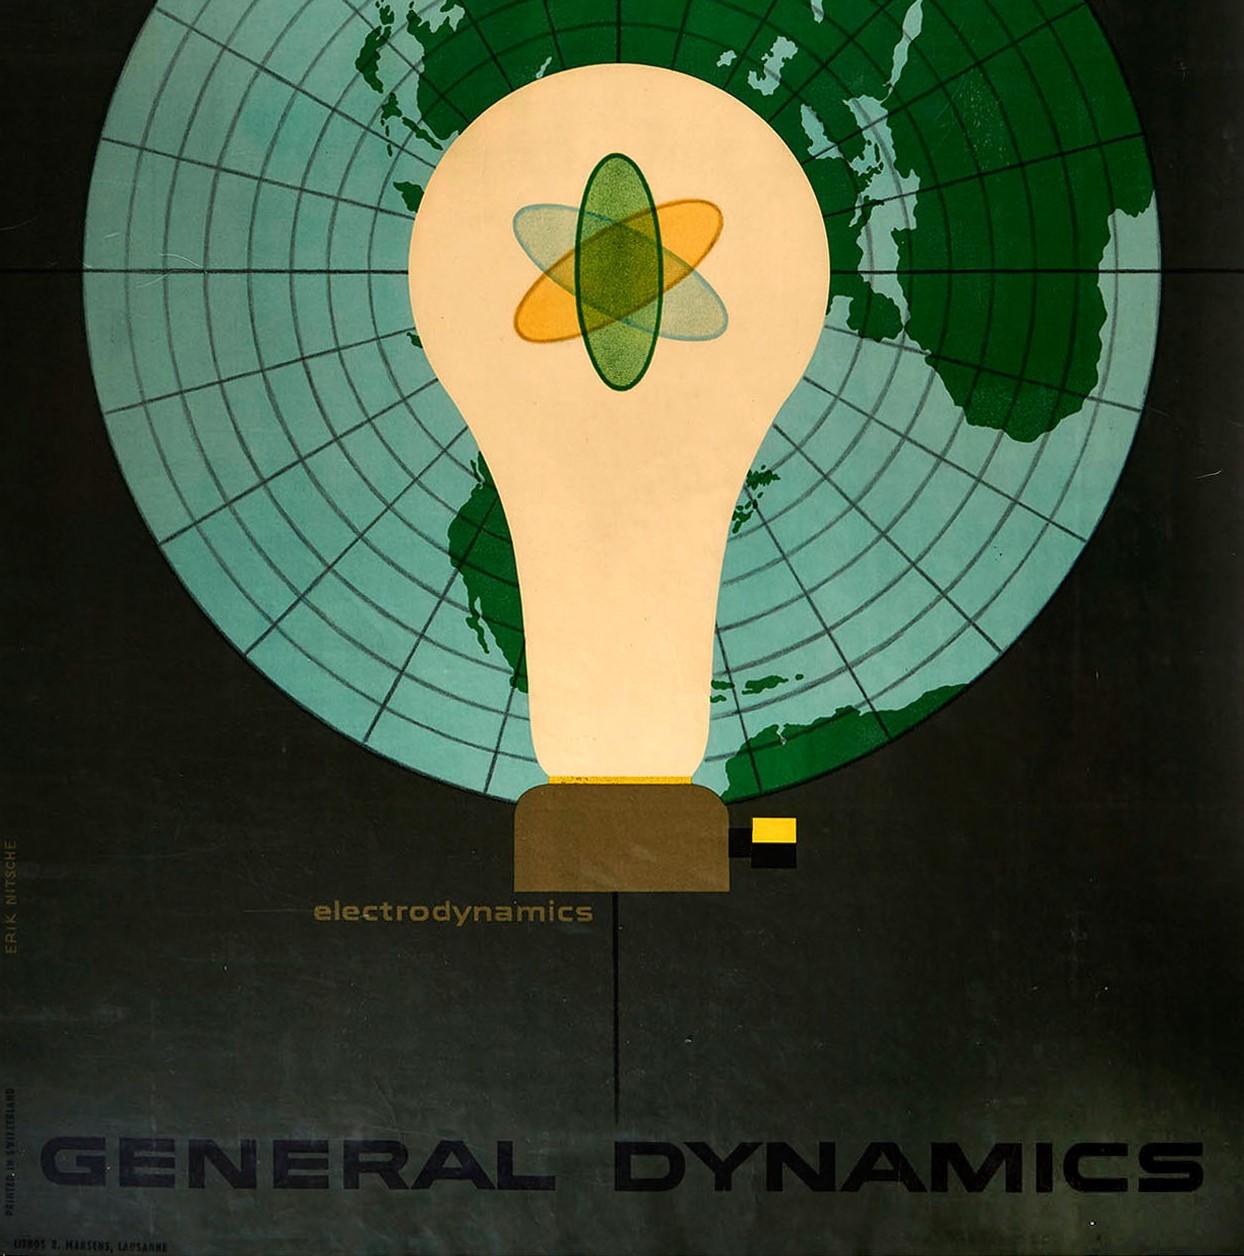 Original-Vintage-Poster, General Dynamics Electrodynamics, Atom Energie, Karte Licht (Schwarz), Print, von Erik Nitsche